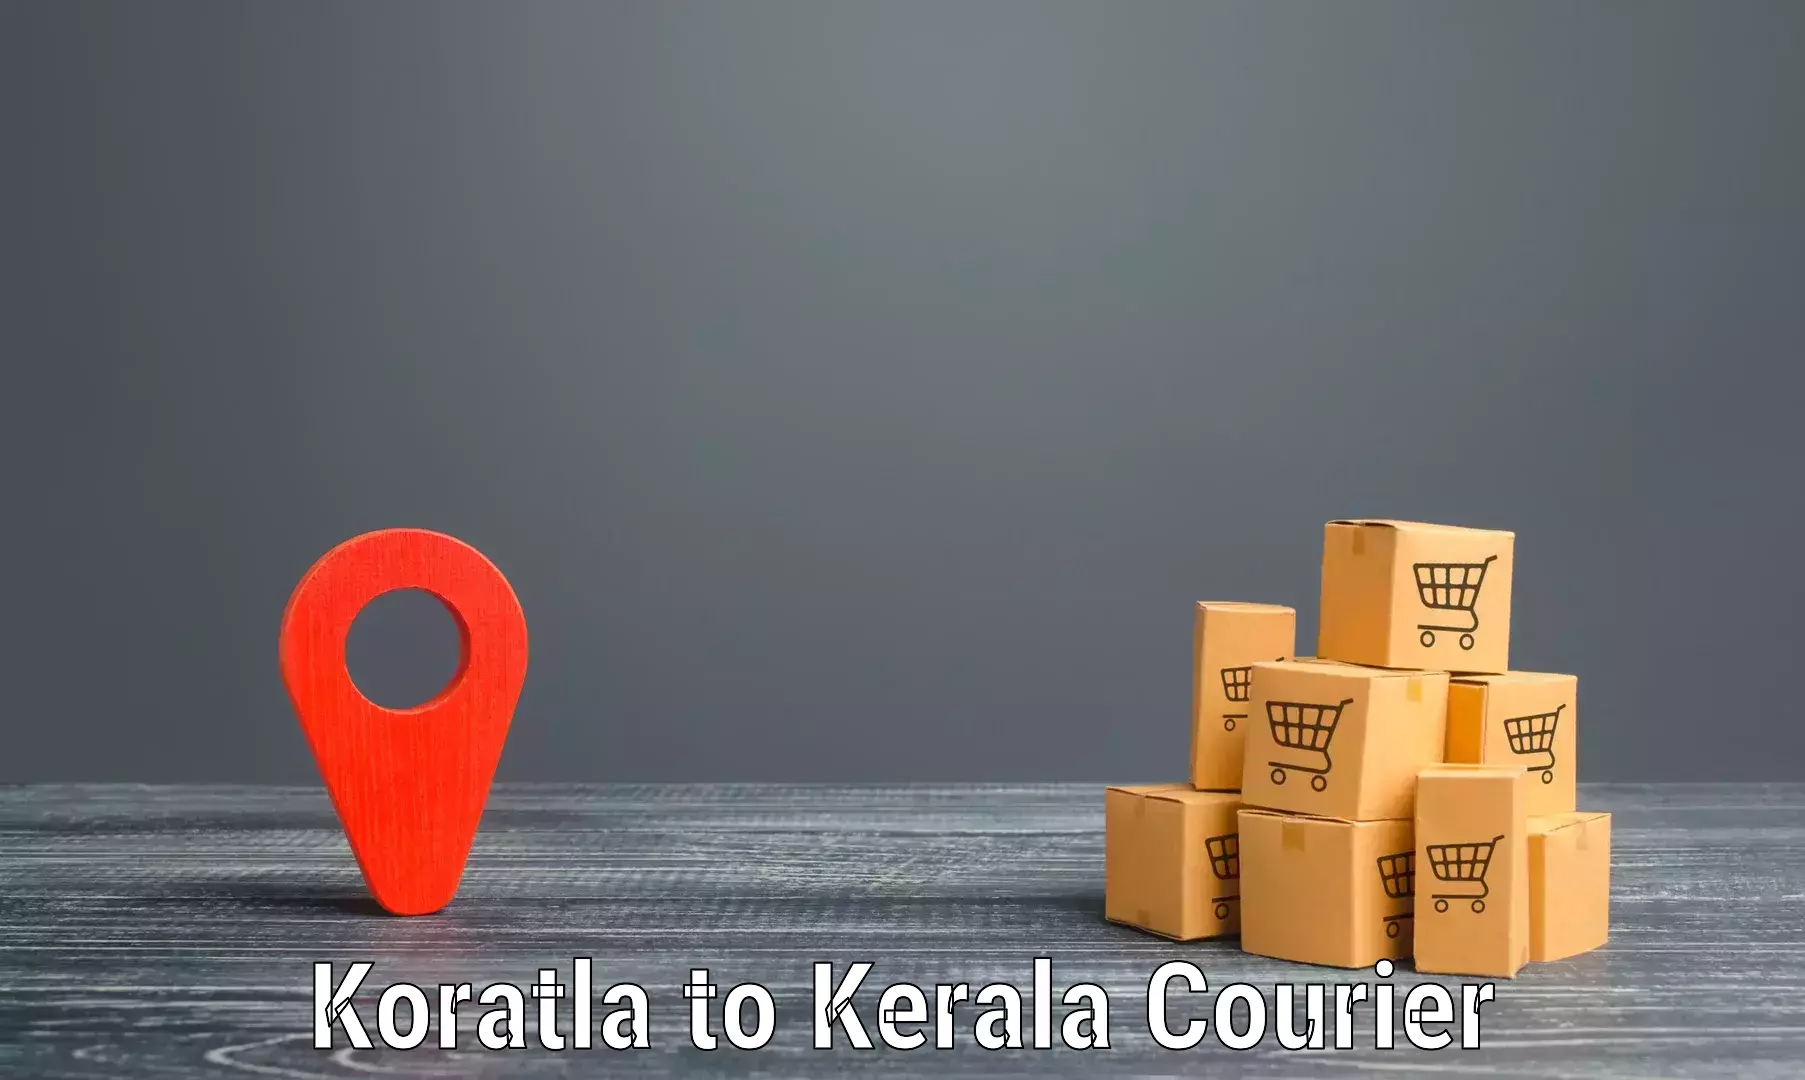 High-performance logistics Koratla to IIIT Kottayam